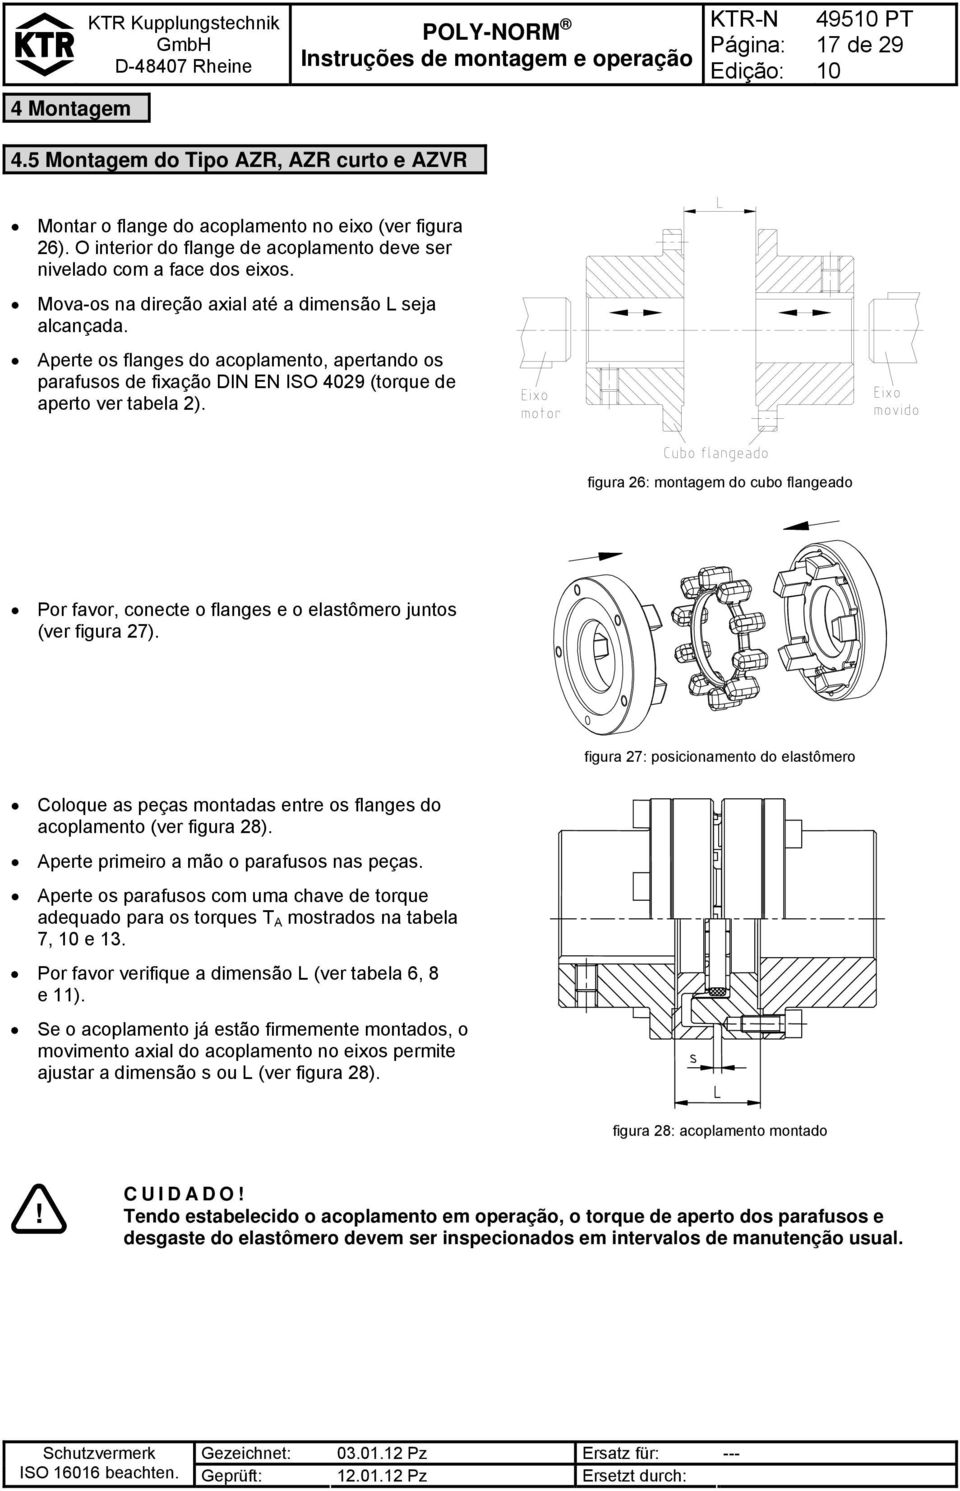 Aperte os flanges do acoplamento, apertando os parafusos de fixação DIN EN ISO 4029 (torque de aperto ver tabela 2).